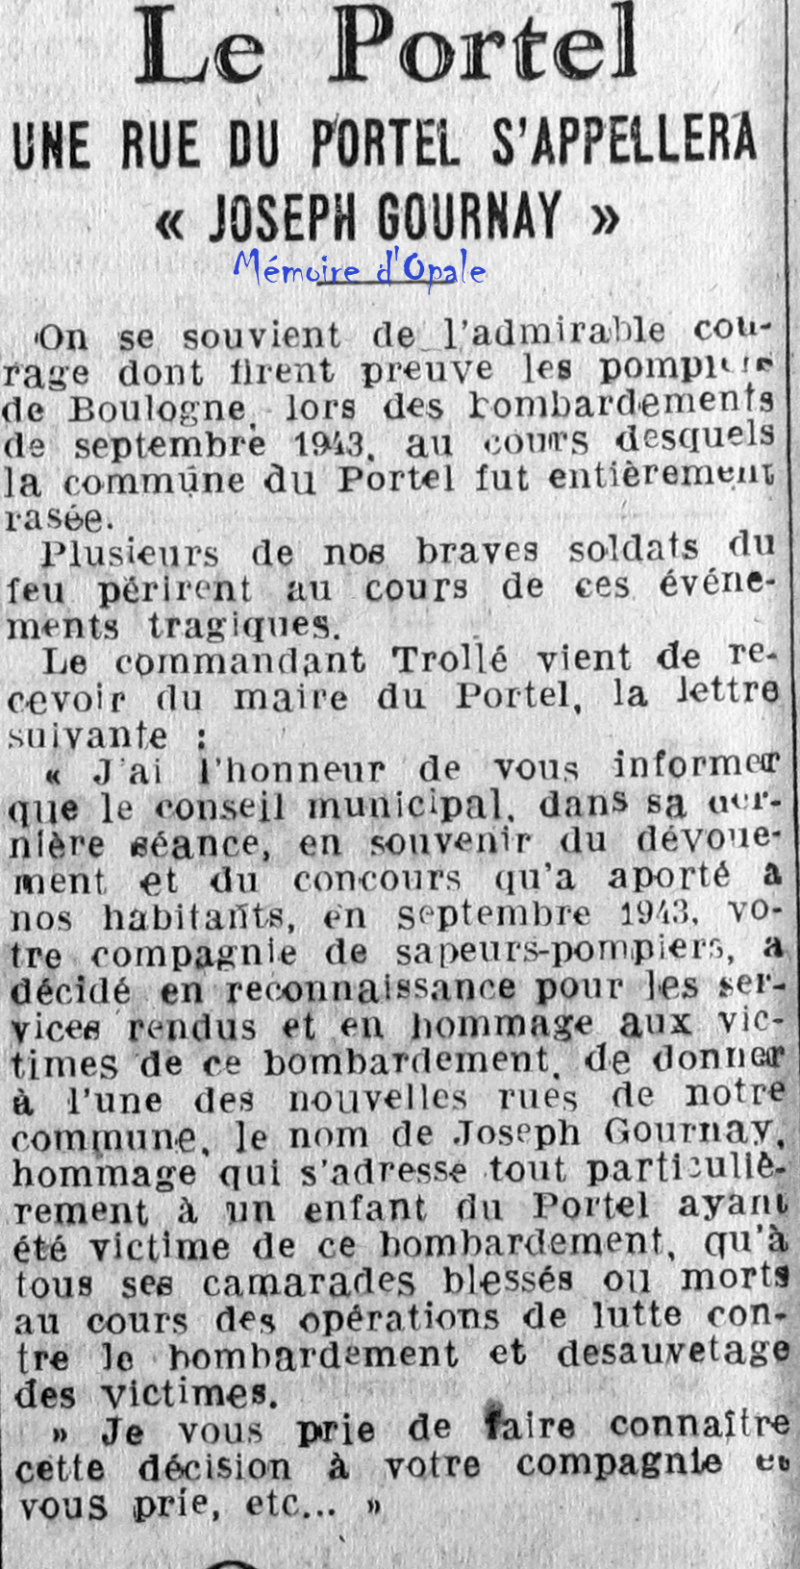 La Voix du Nord – 1946 – Photos Alain ÉVRARD pour Mémoire d’Opale - Page 38 La_v1448